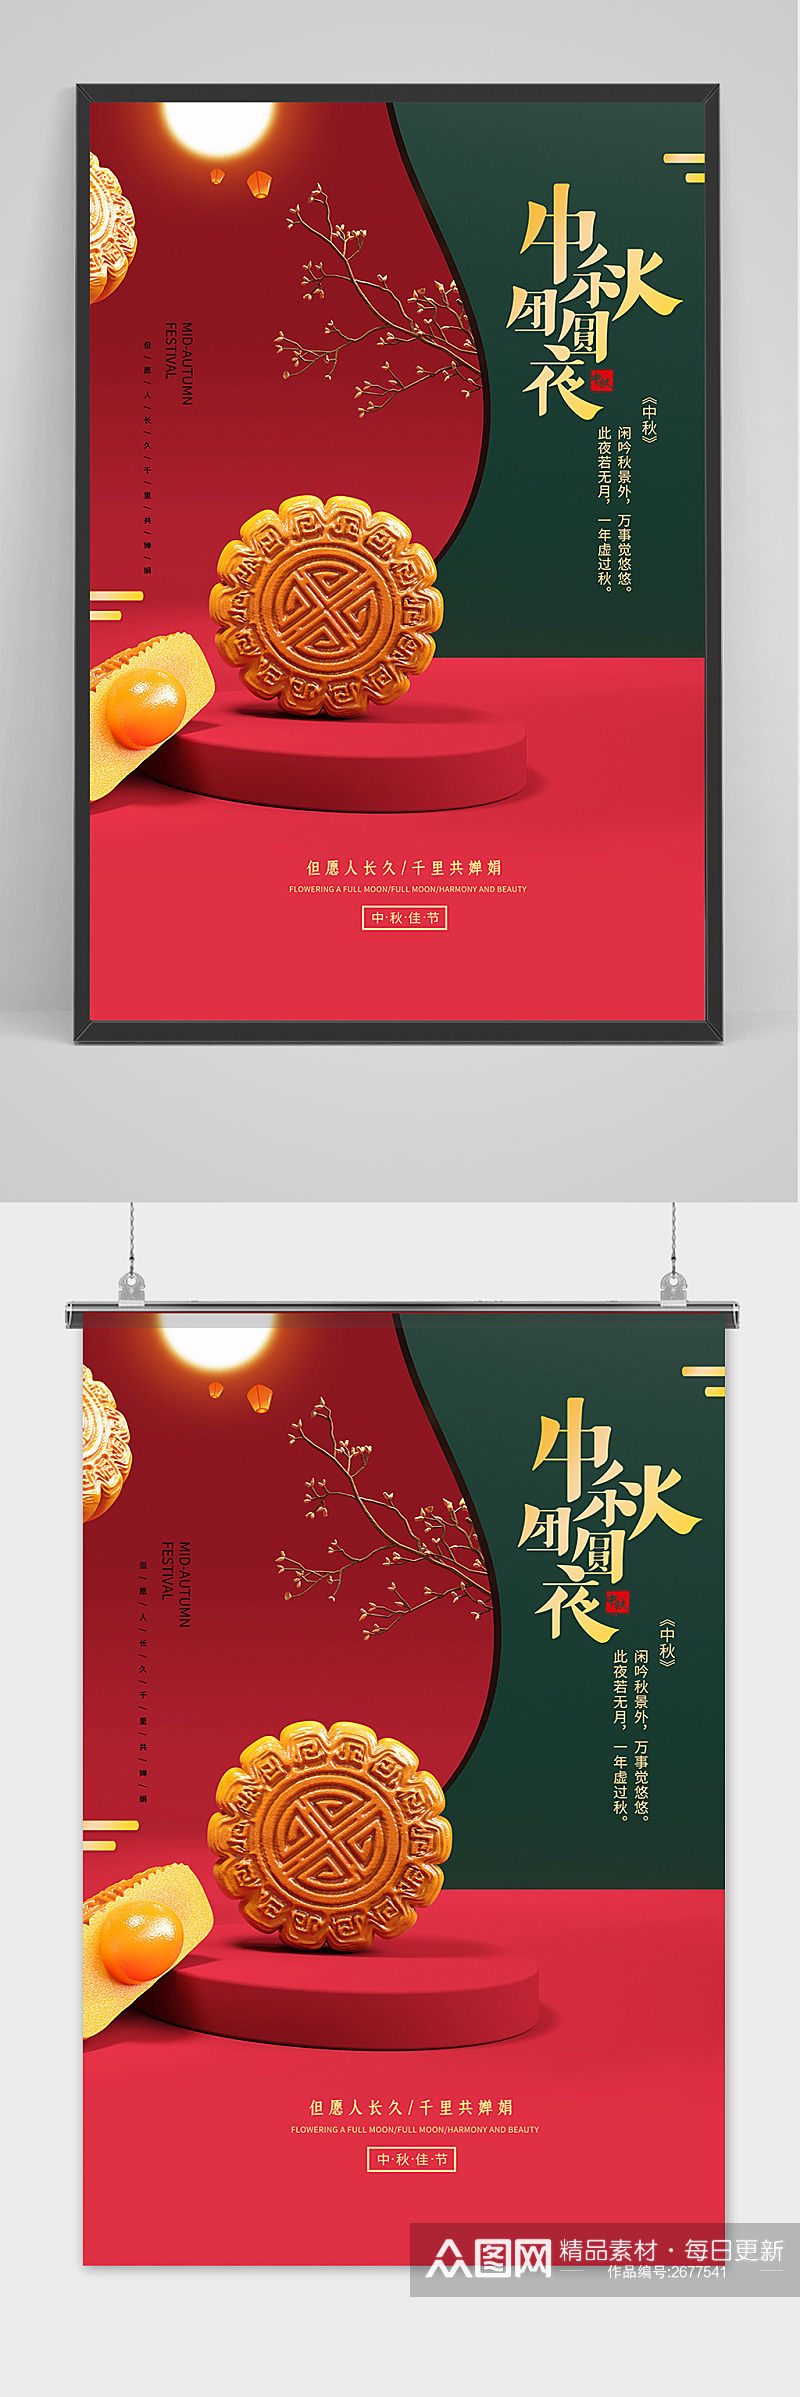 创意传统中国风中秋节月饼海报素材